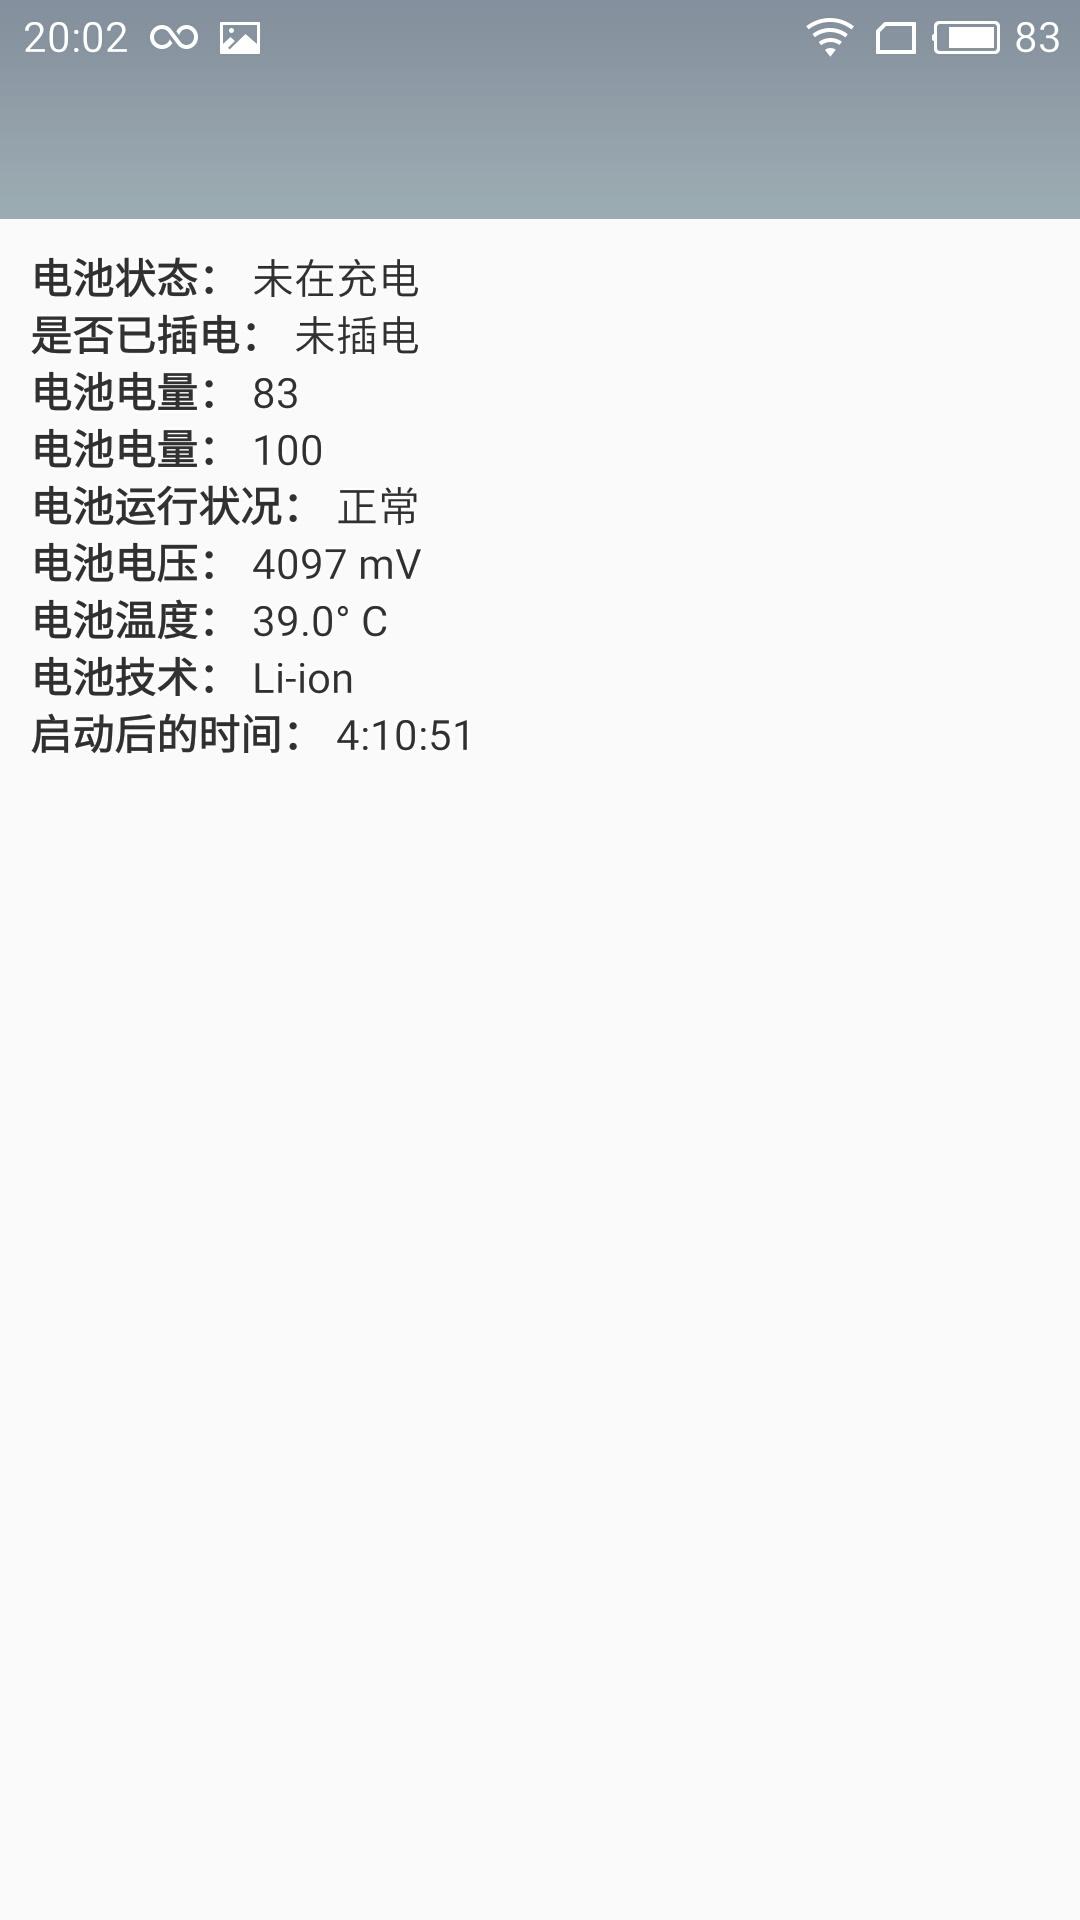 千元之王魅蓝Note5全面评测 给我一个不买的理由